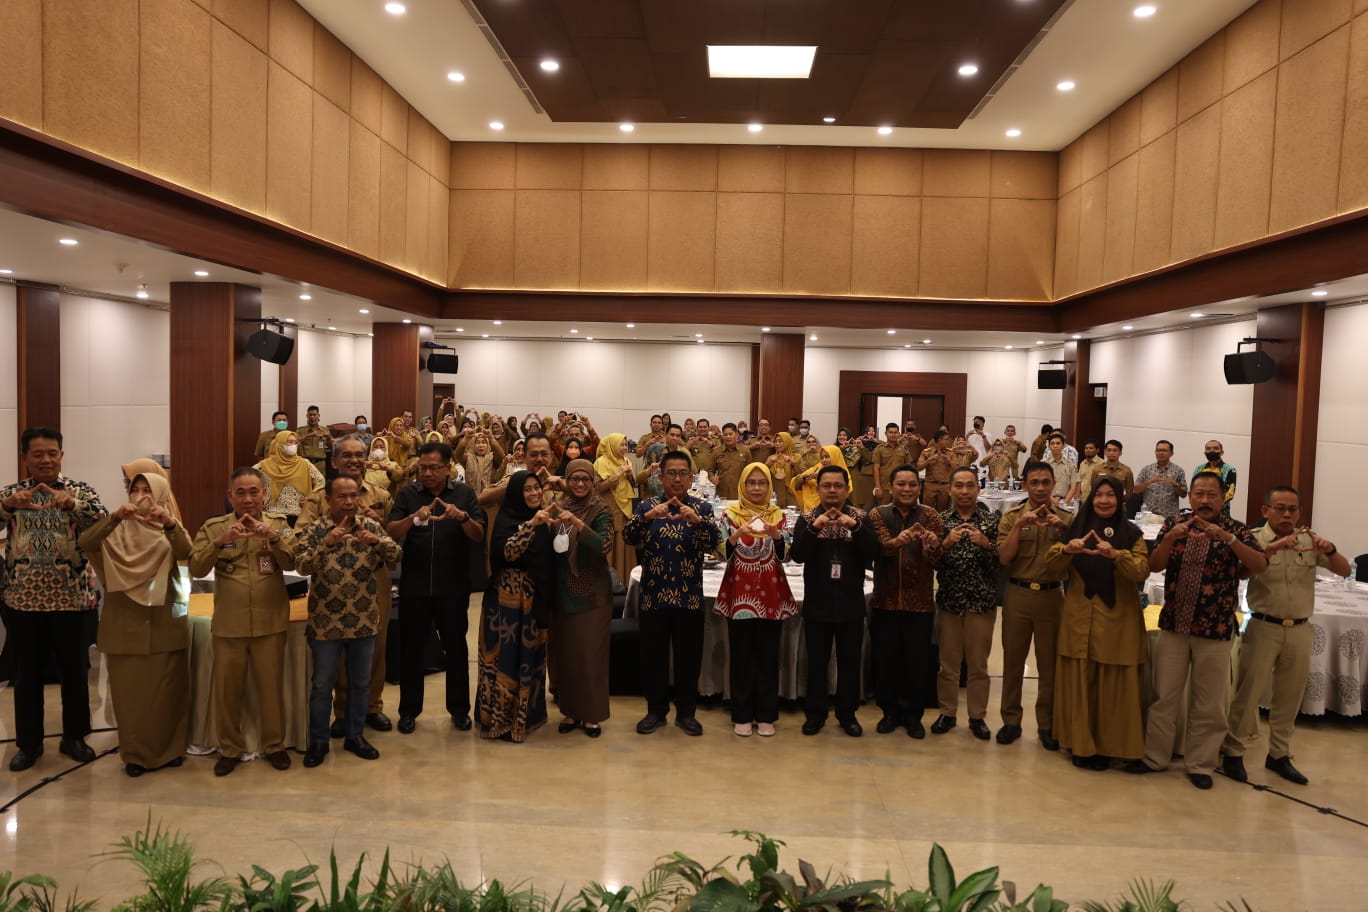 ANRI Selenggarakan Rakorda Pembinaan SDM Kearsipan se-Provinsi Sulawesi Selatan